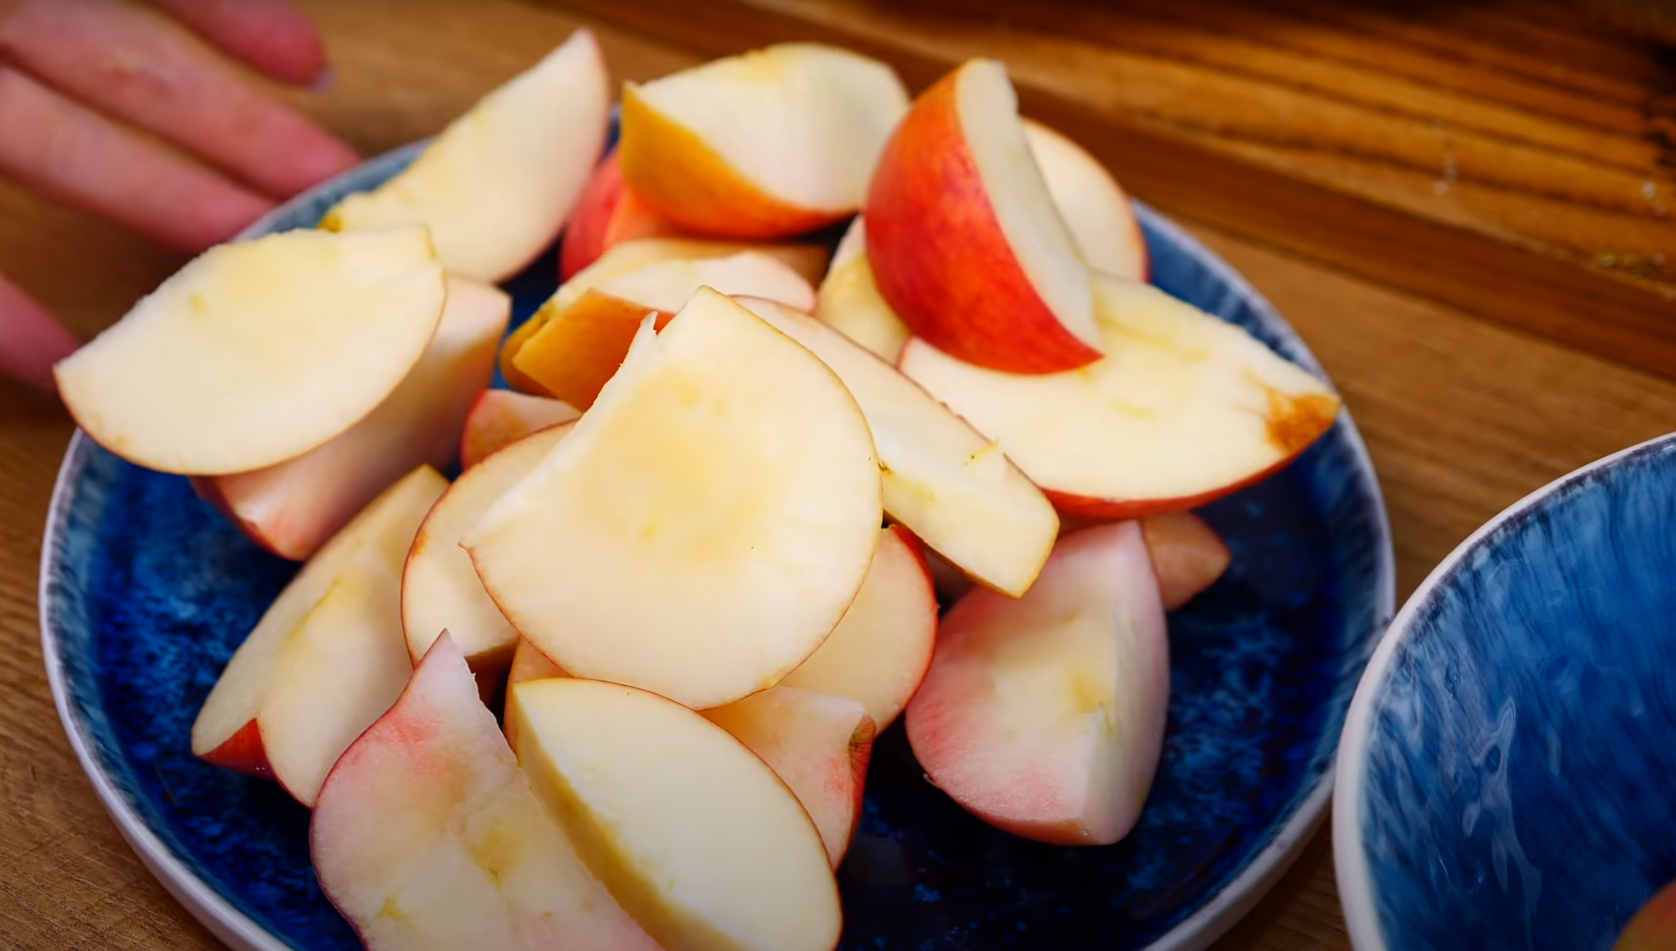 Приступаем к яблокам: моем и нарезаем на средние дольки. Подойдут любые кисло-сладкие яблоки.